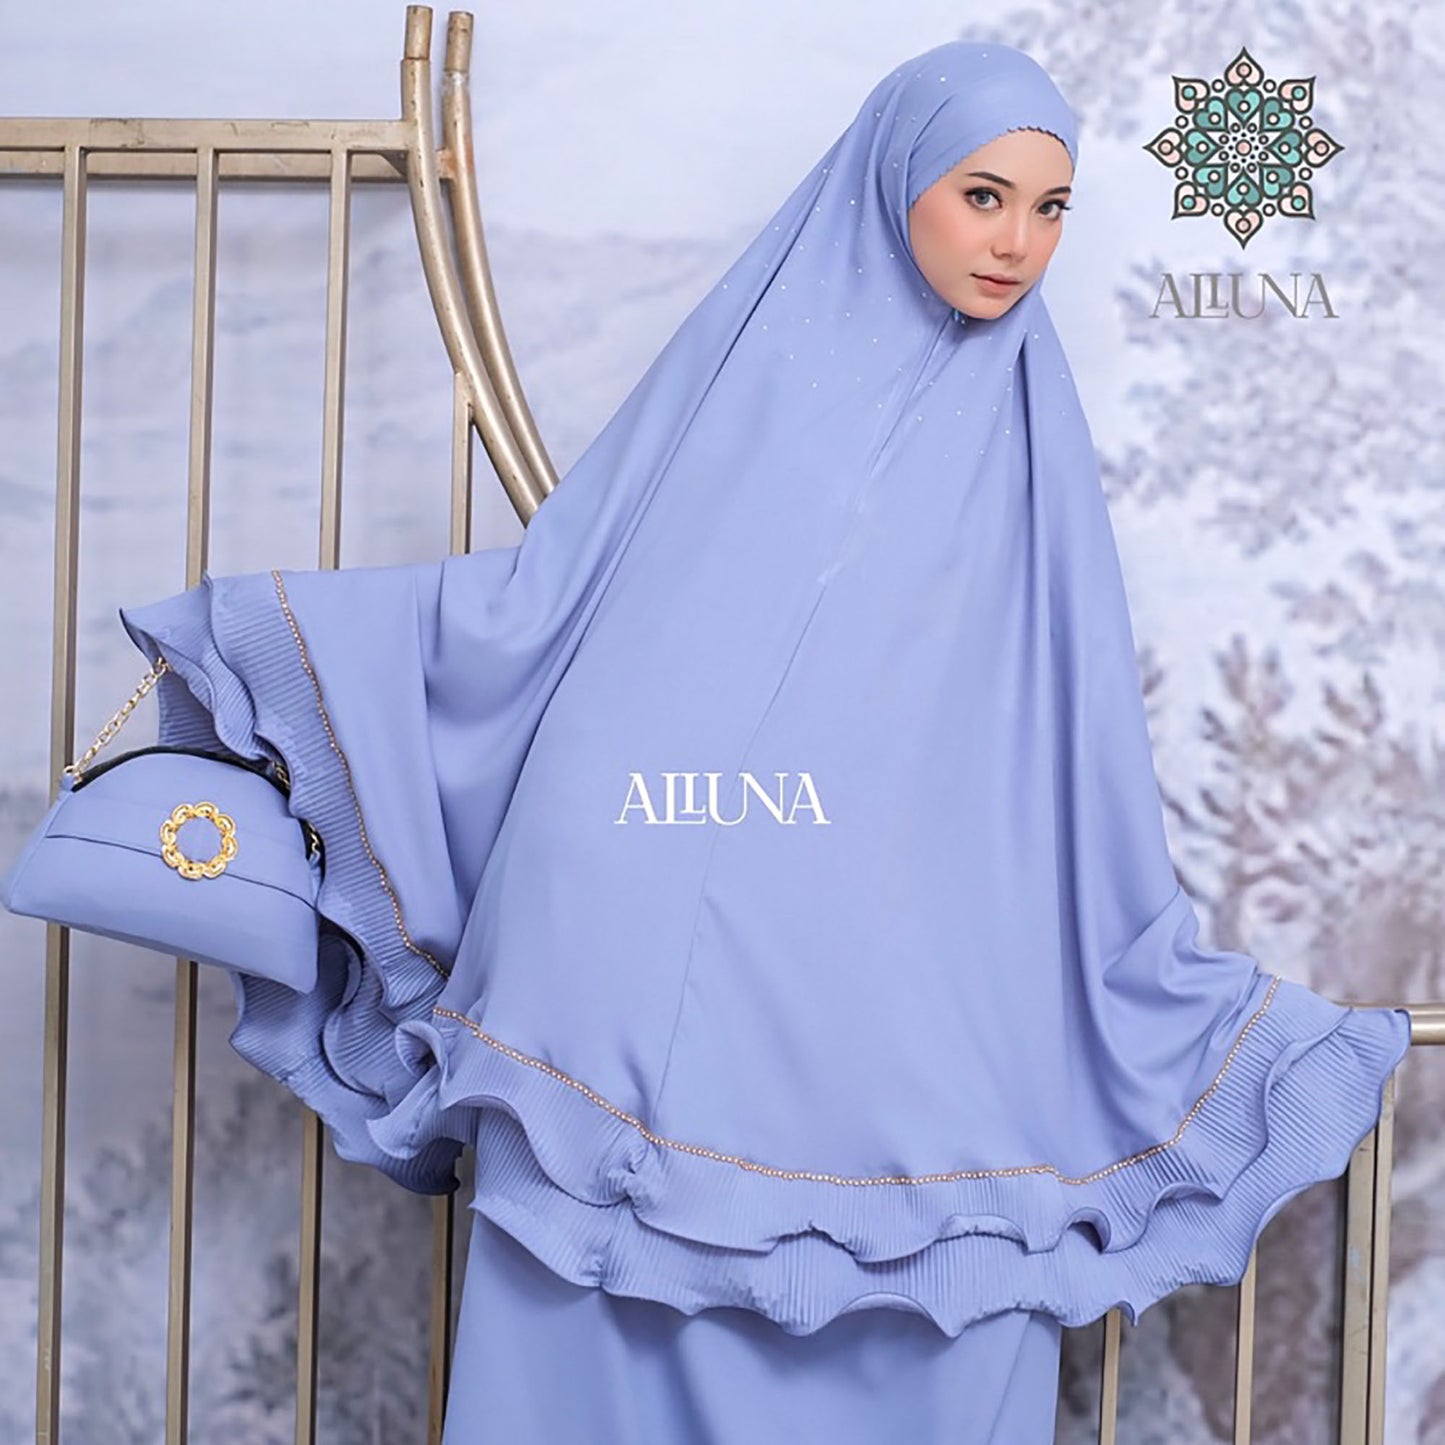 Zalina Series Exclusive 3in1 Luxury Adult Mukena Muslim Prayer Dress